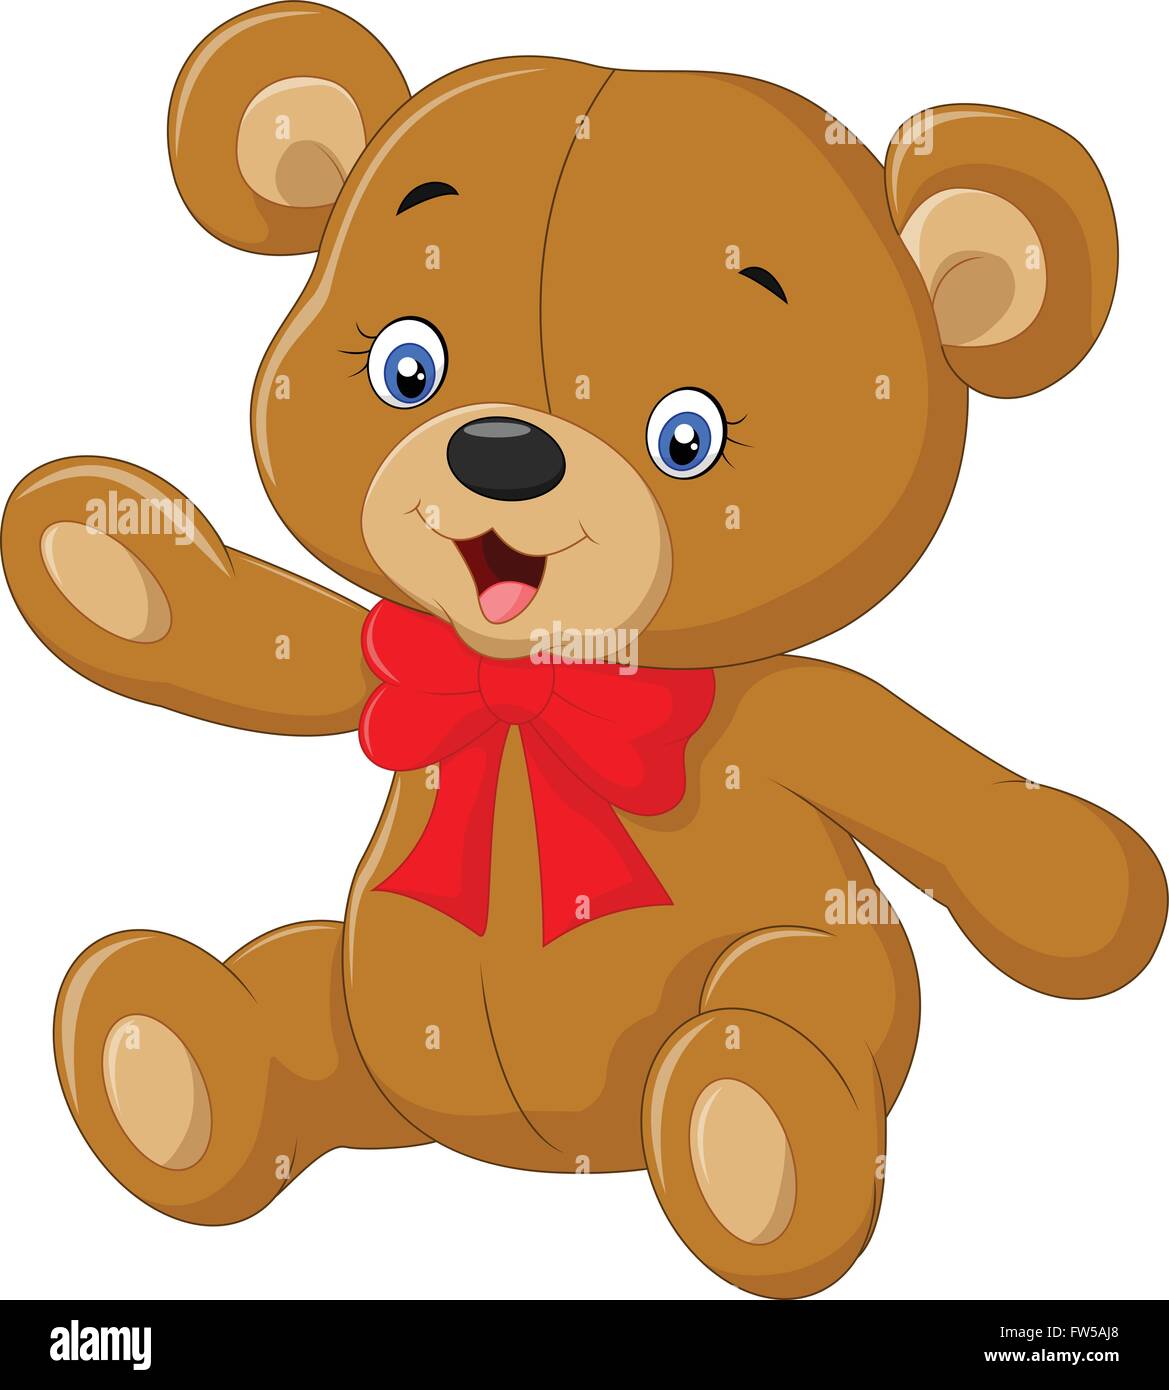 Teddy bear A vector illustration of a cute cartoon teddy bear waving hand  Stock Vector Image & Art - Alamy